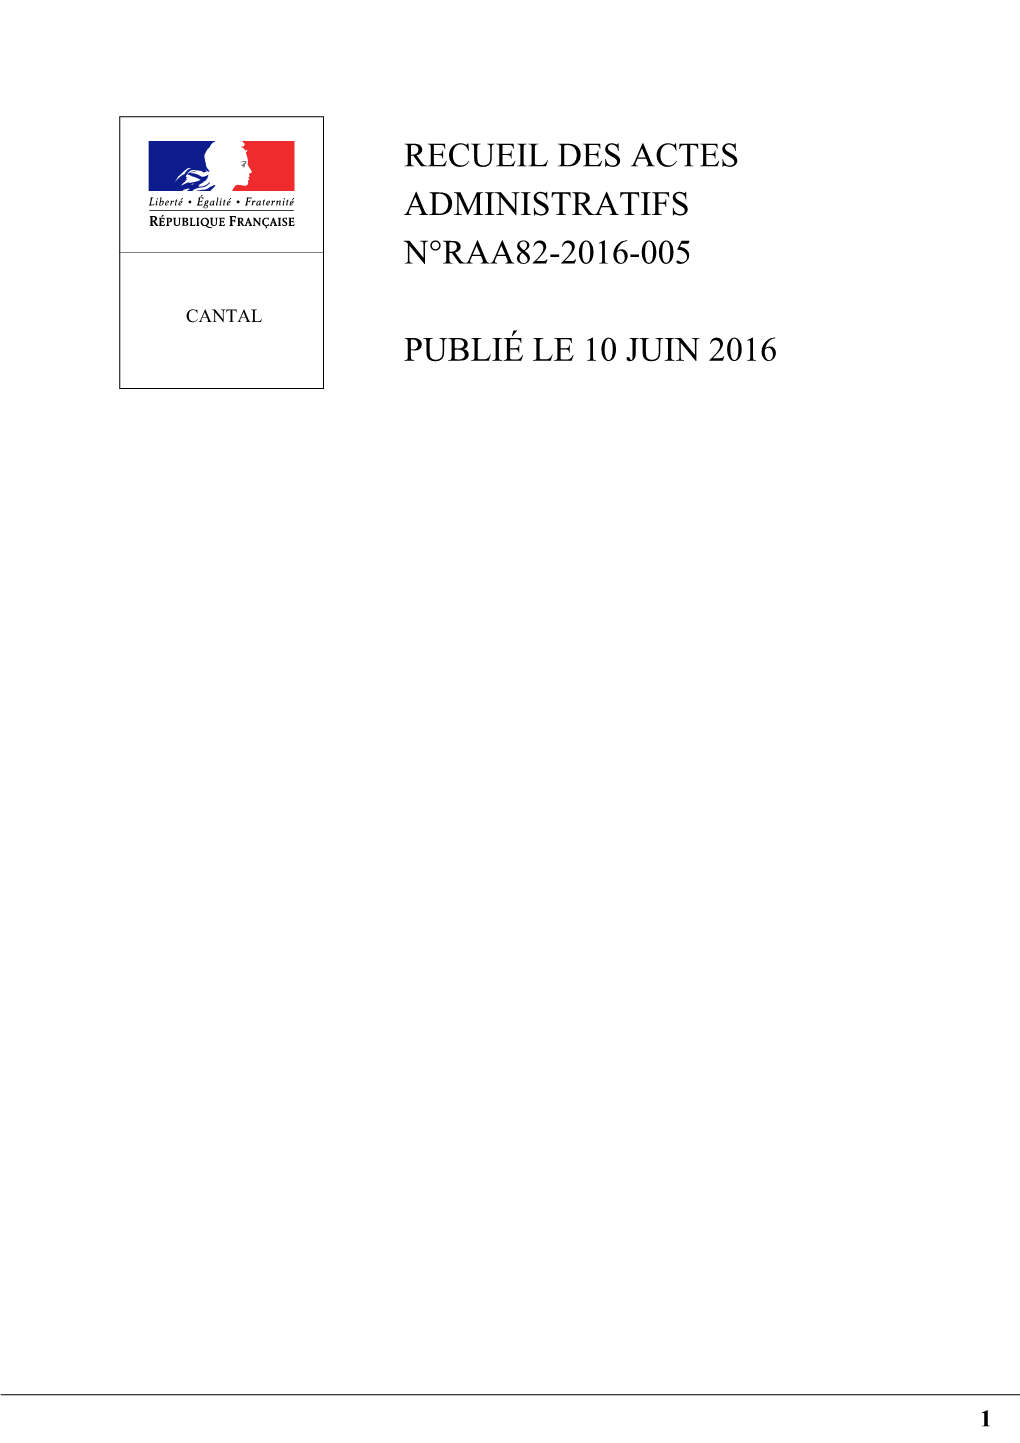 Recueil Des Actes Administratifs N°Raa82-2016-005 Publié Le 10 Juin 2016